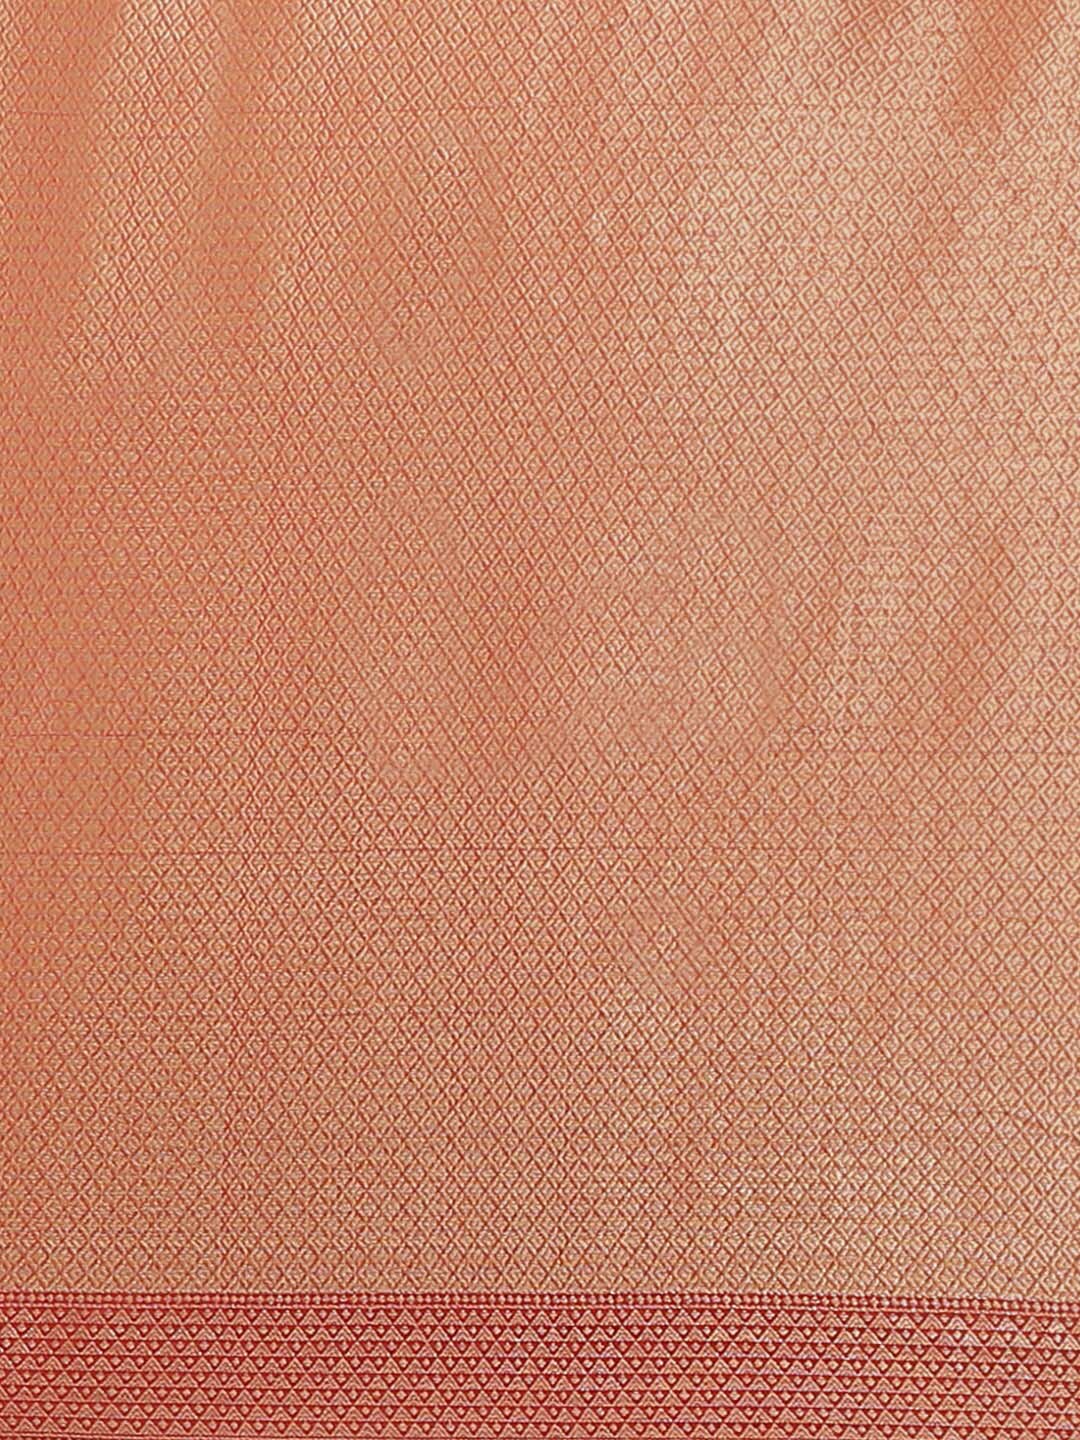 Indethnic Banarasi Rust Woven Design Festive Wear Saree - Saree Detail View